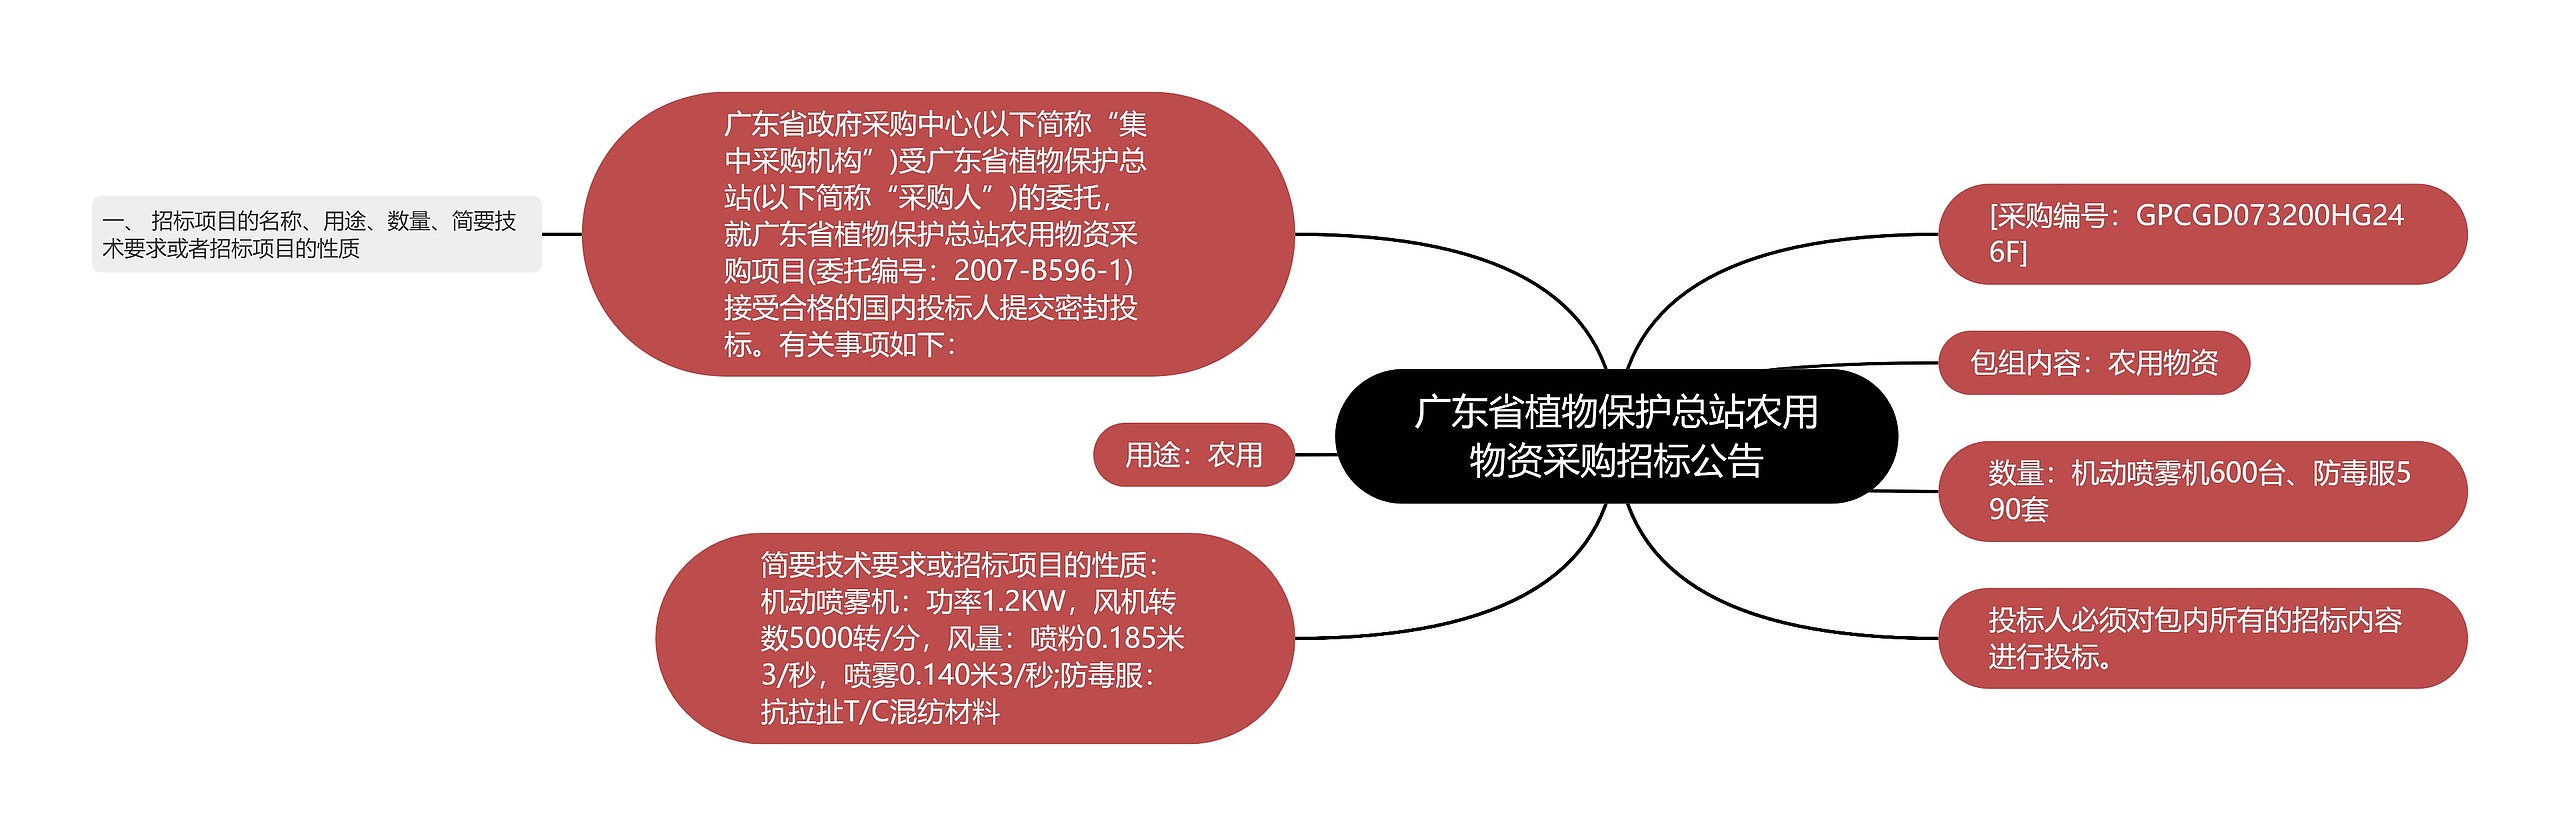 广东省植物保护总站农用物资采购招标公告思维导图